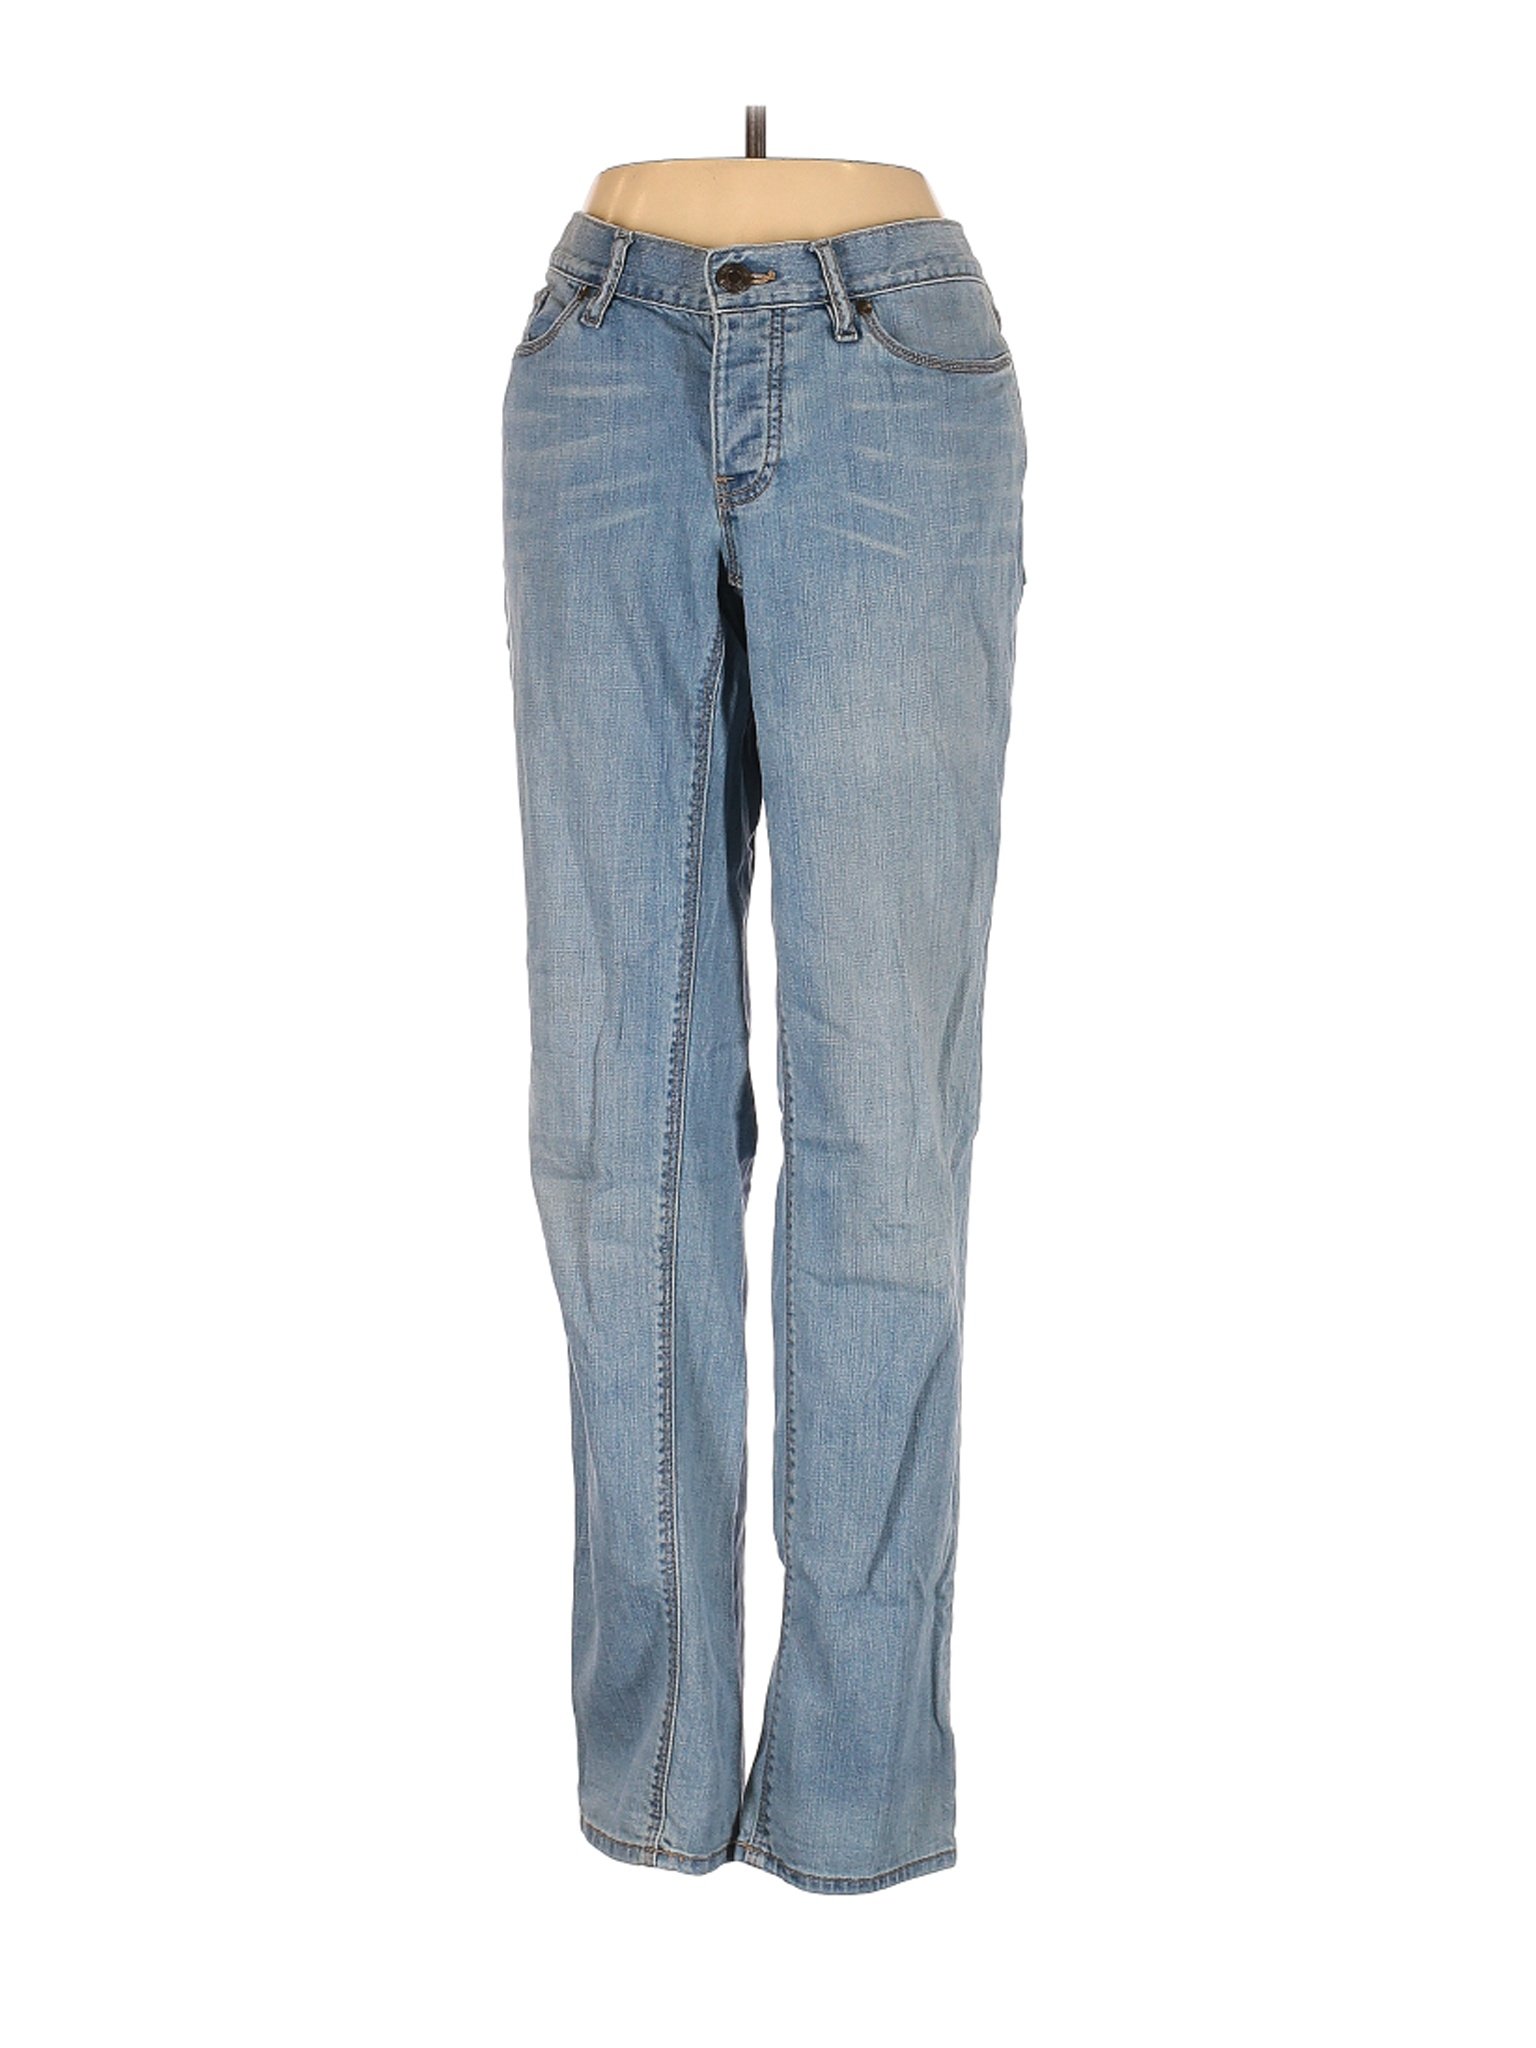 Eddie Bauer Women Blue Jeans 4 | eBay